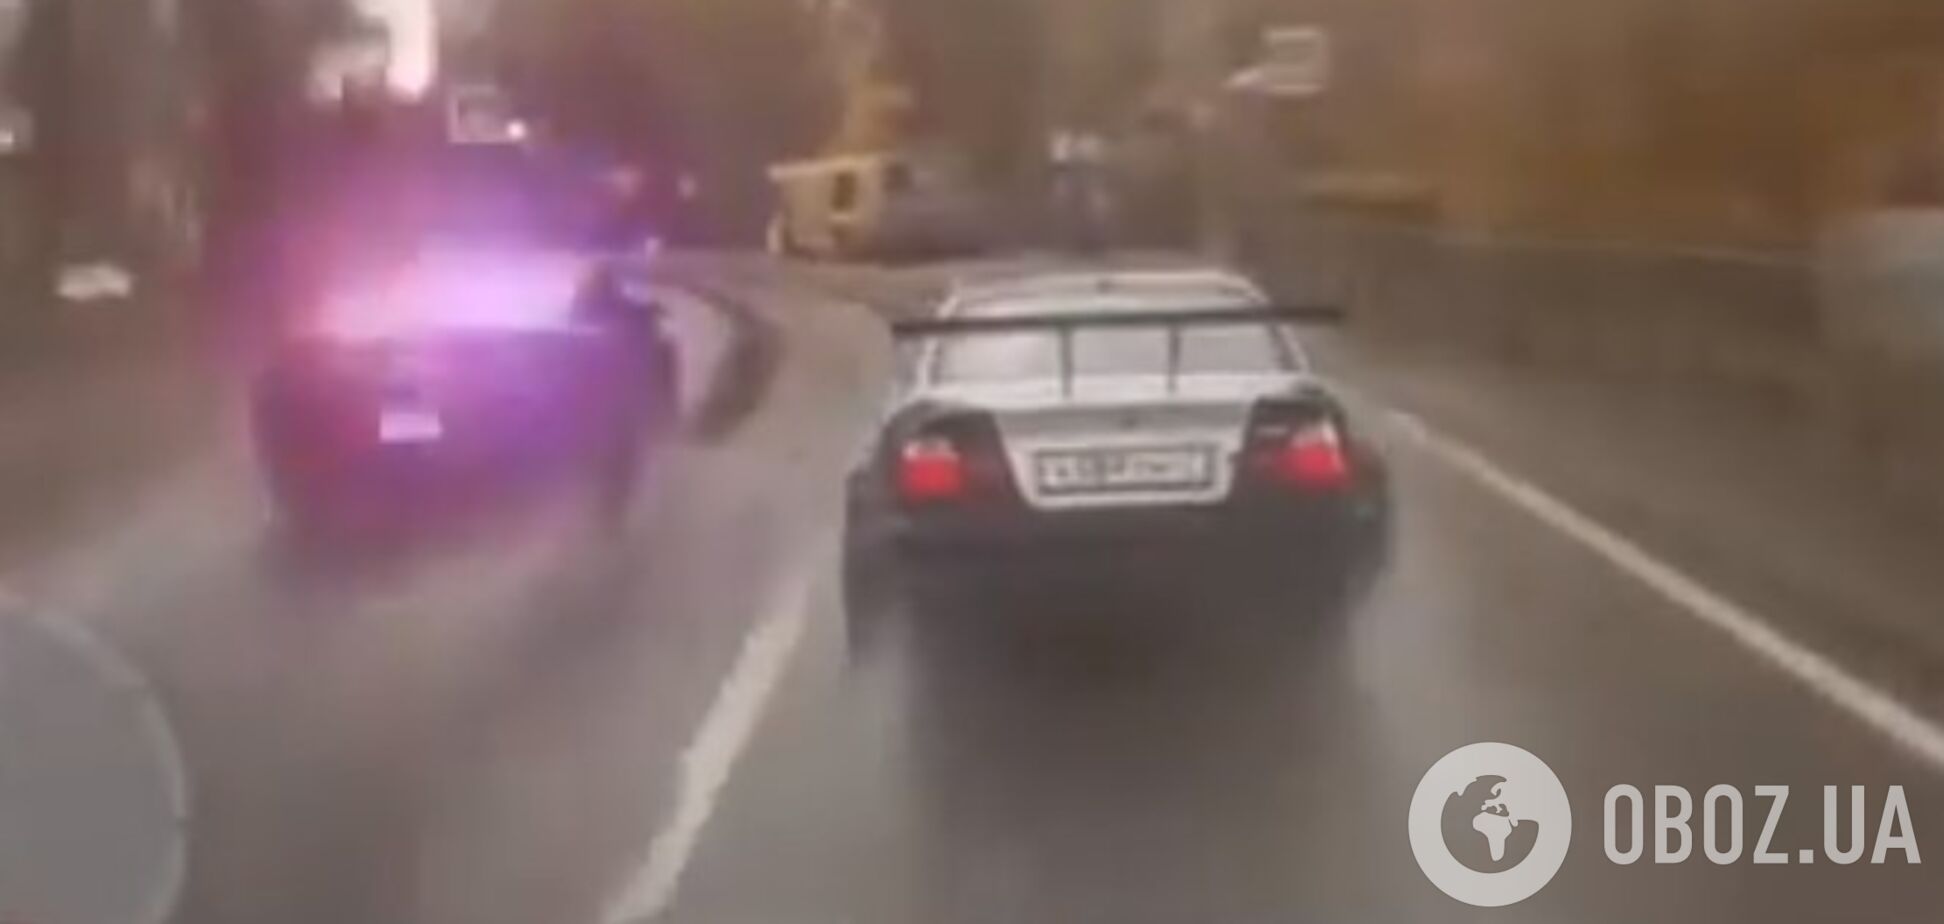 Нарвався на поліцію: у Росії зірвиголови вирішили поганяти на дорозі